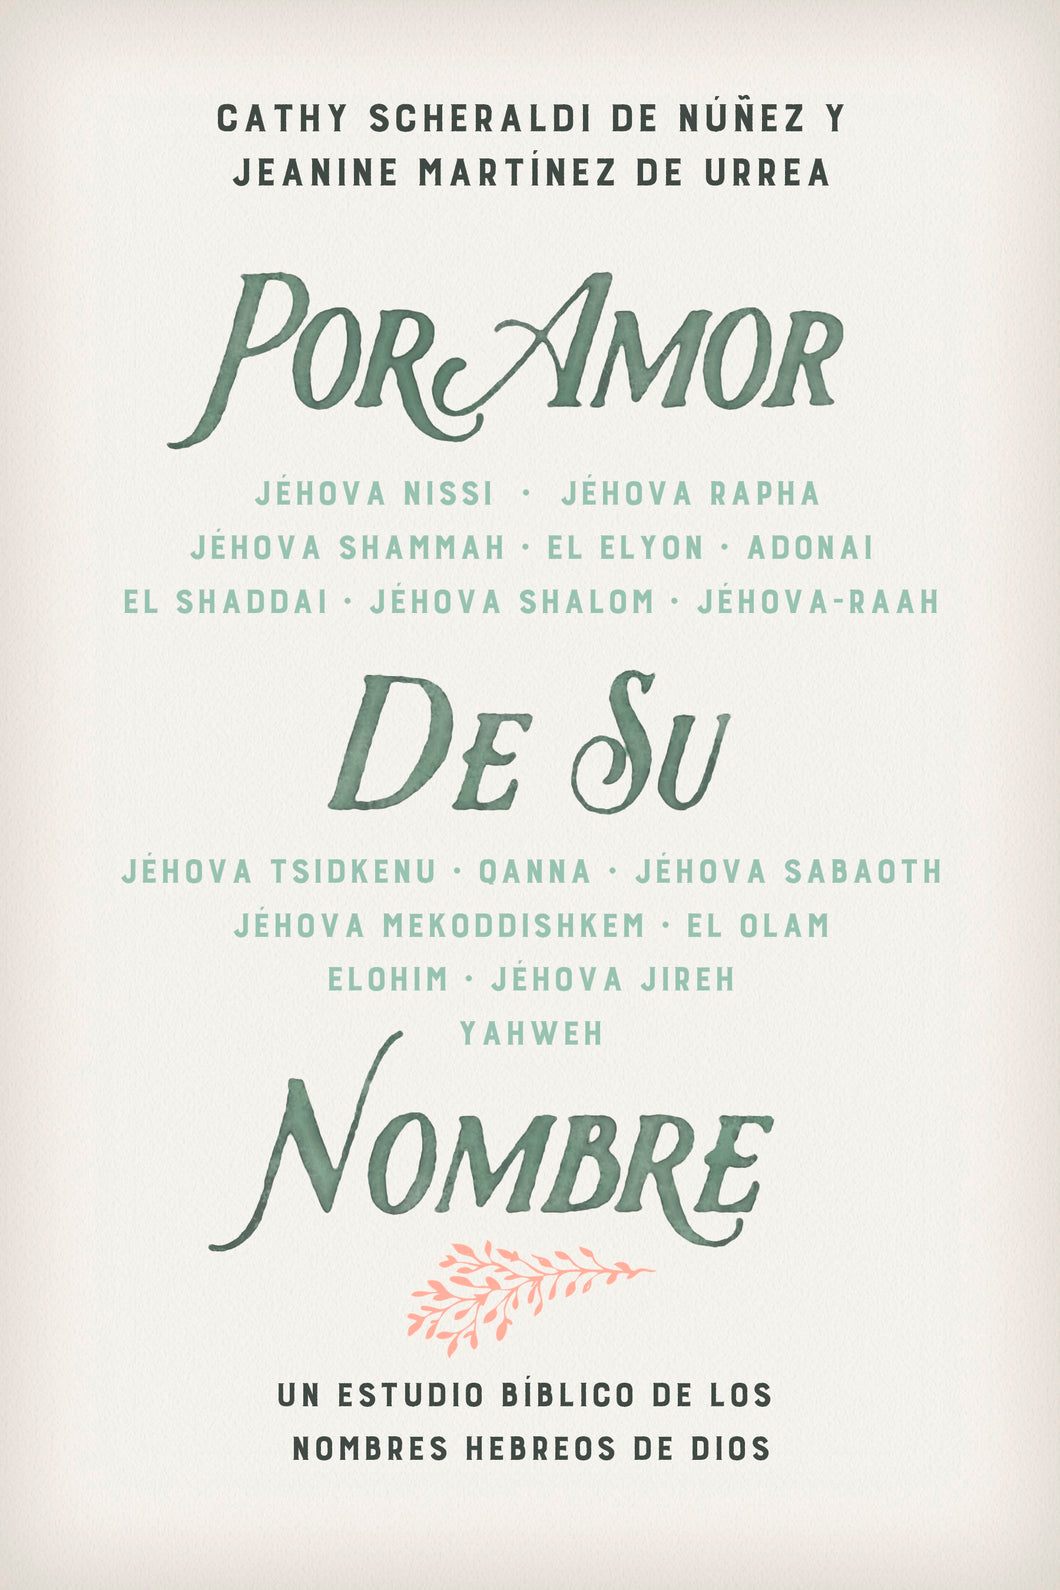 Spanish-For His Name's Sake (Por Amor De Su Nombre)